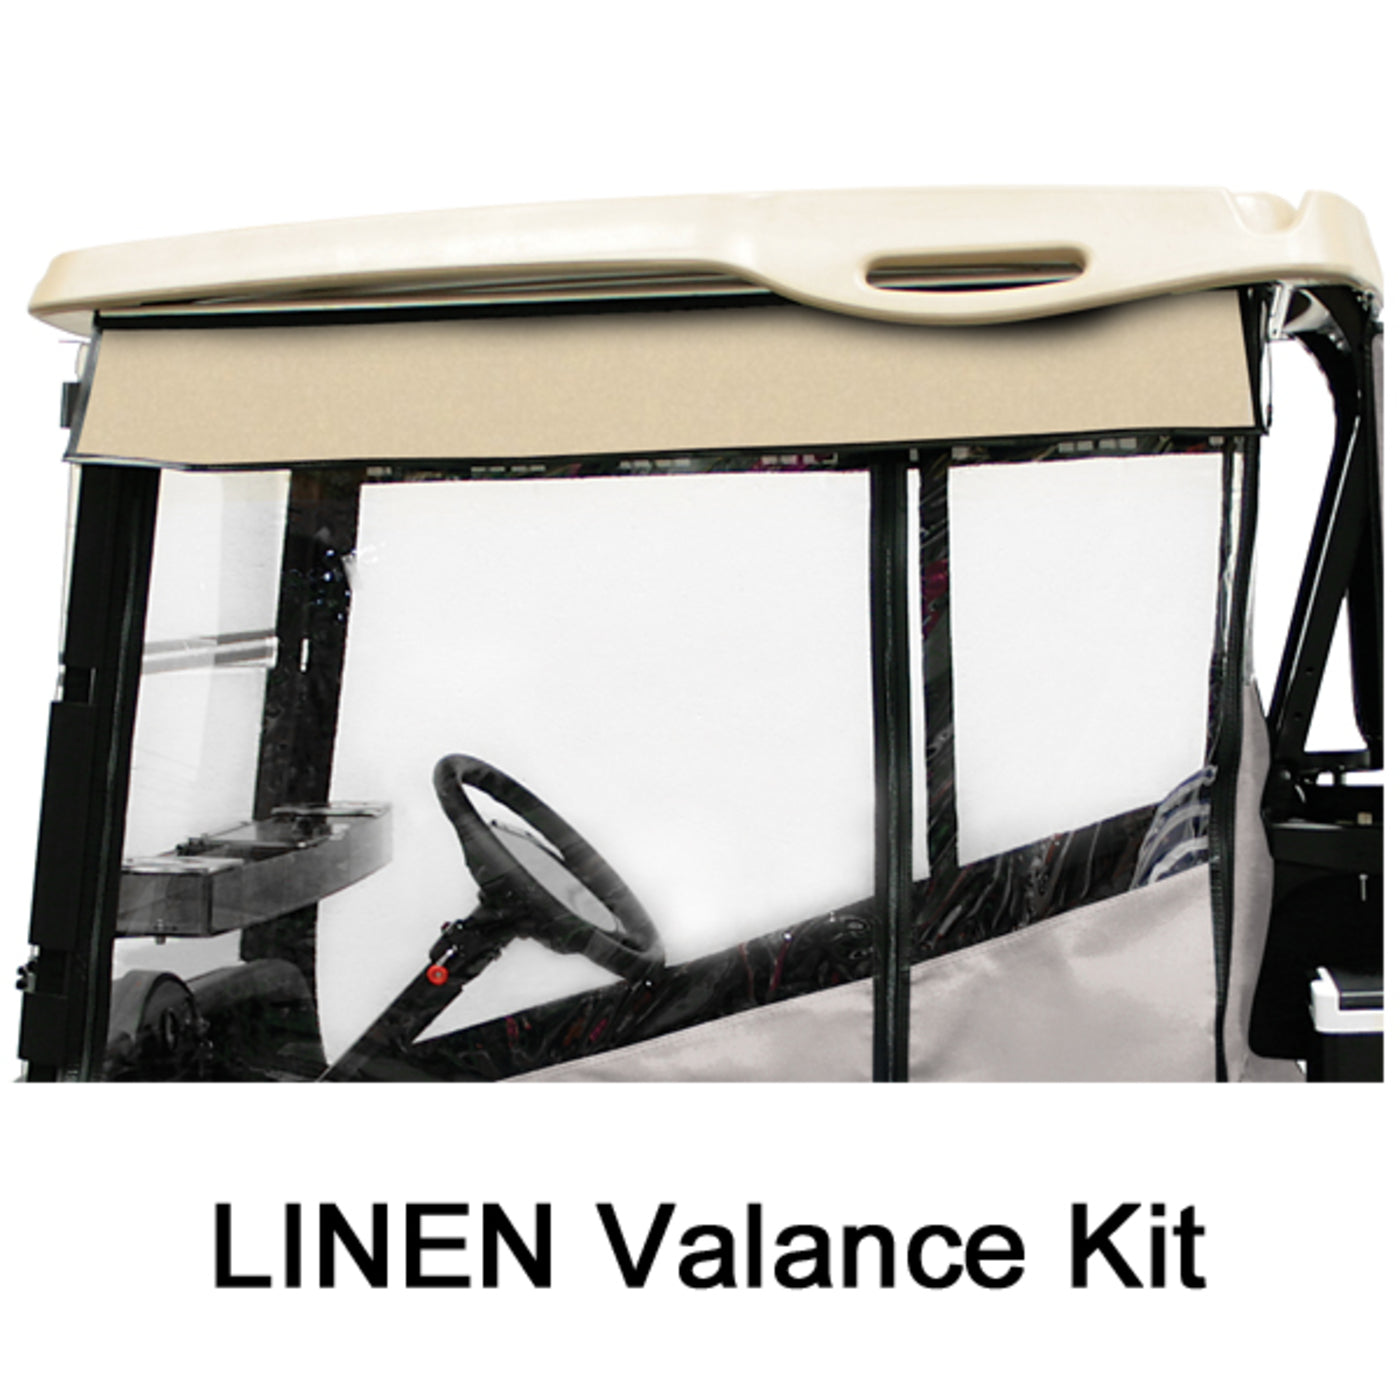 RedDot 2 Passenger Chameleon Linen Valance Kit - Club Car